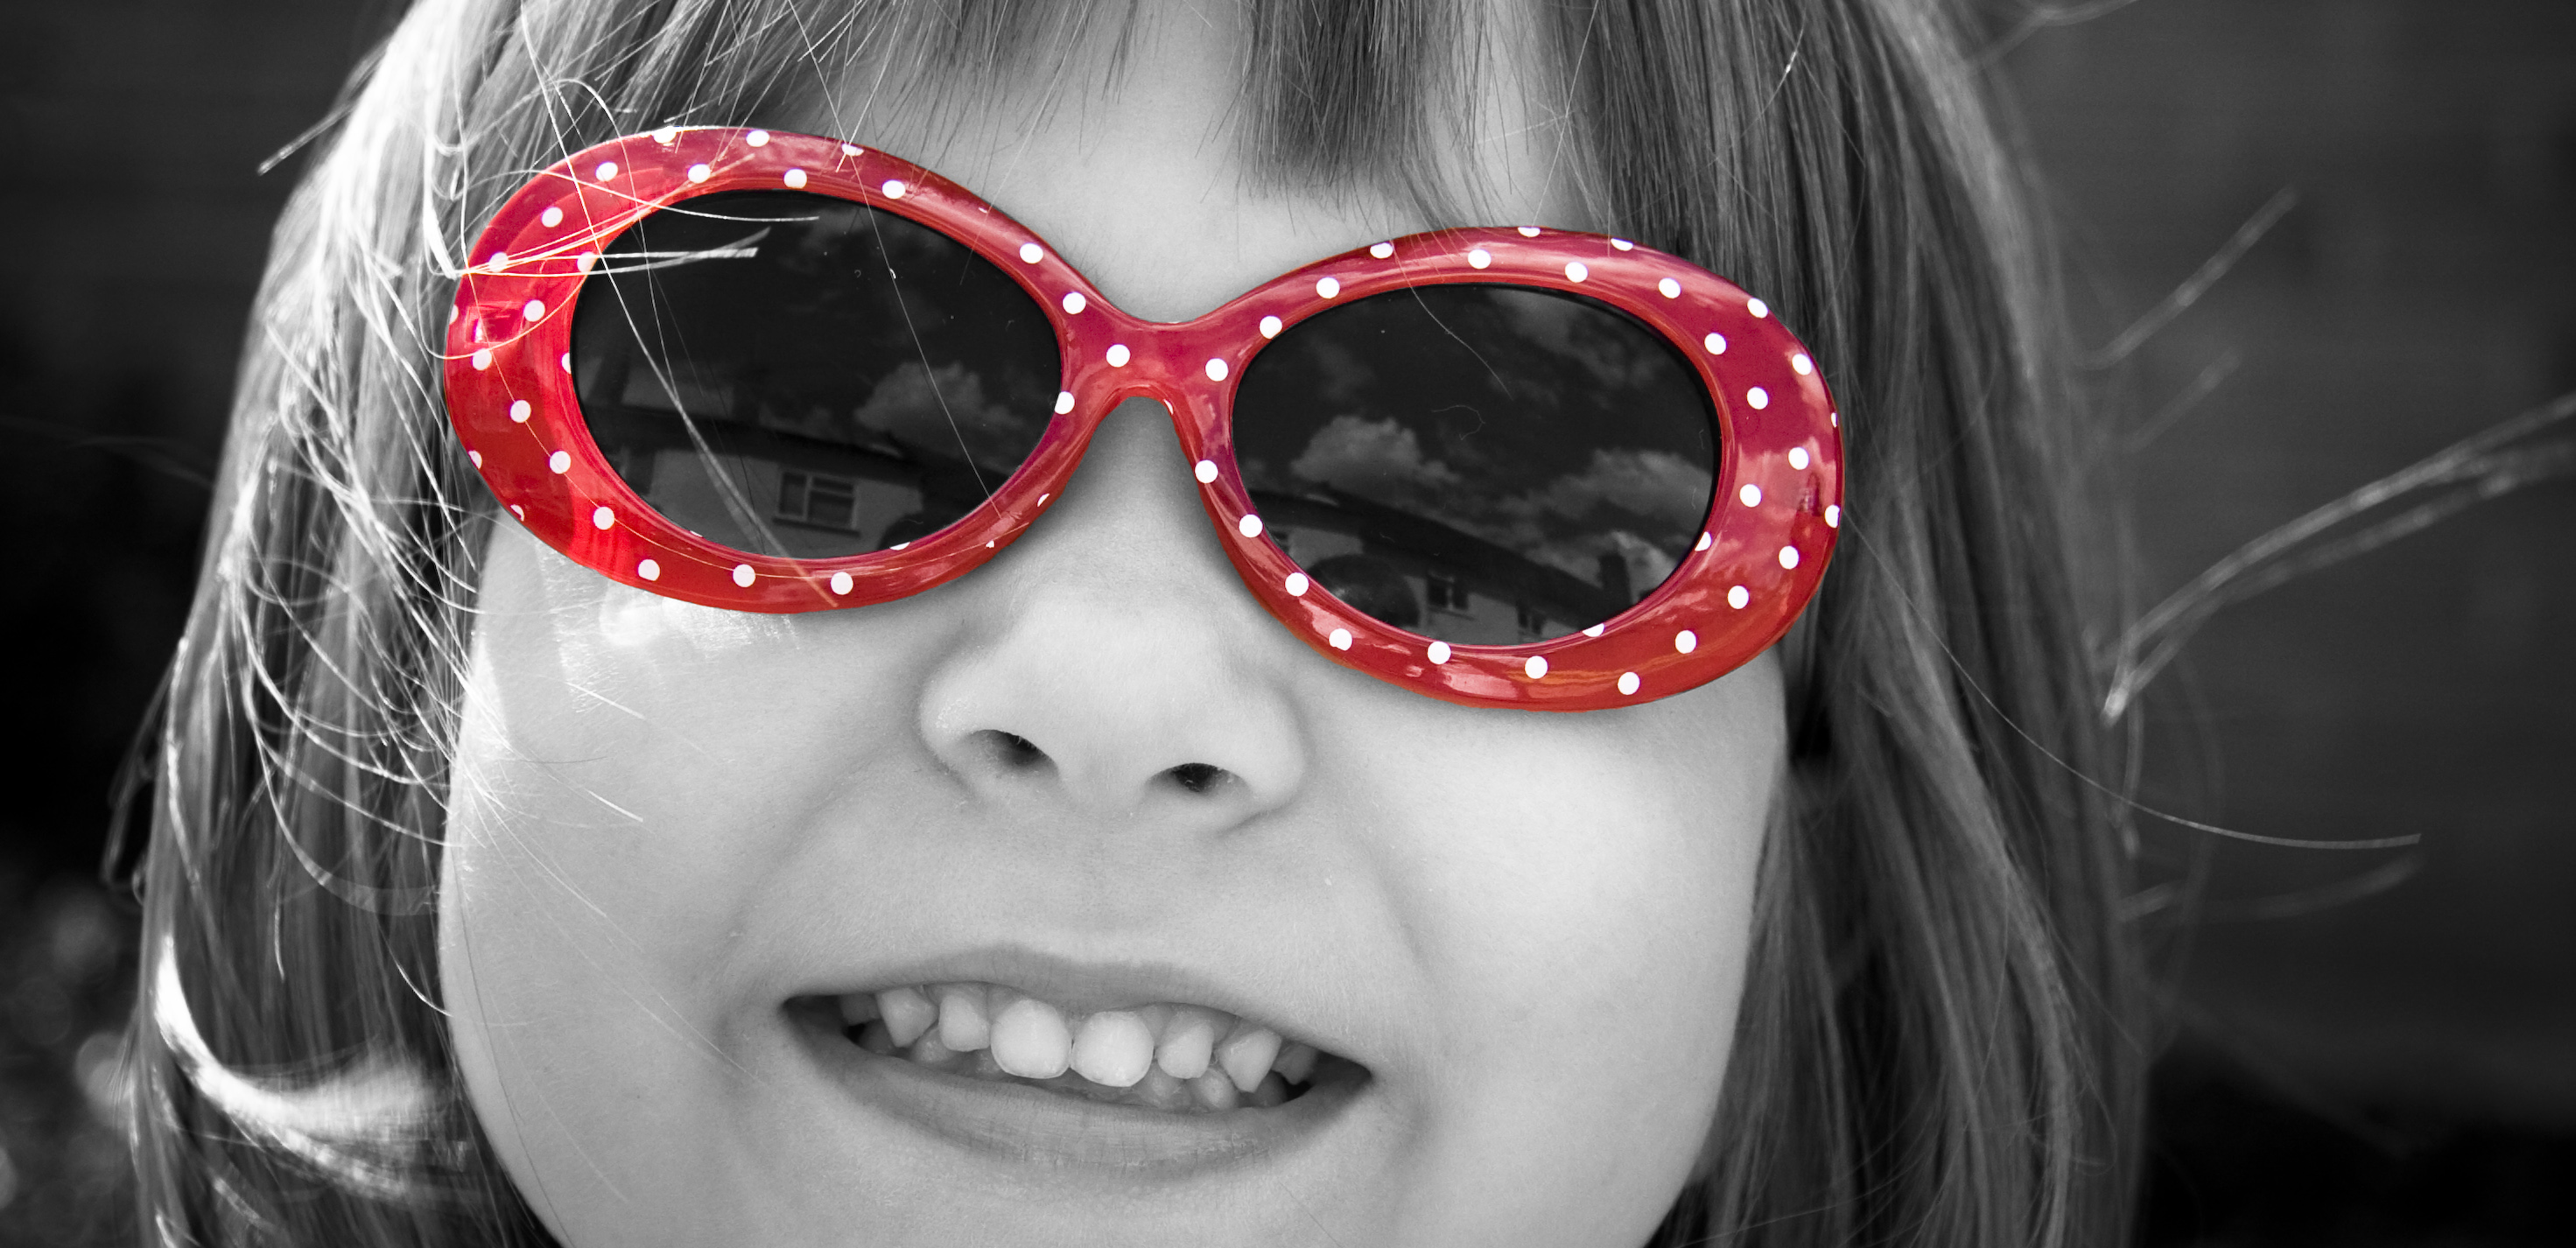 Porter des lunettes serait mieux accepté par les enfants qu'arborer un pansement oculaire, alors que le résultat est le mêm avec des verres occultants. © Stuart Richards, Flickr, CC by-nd 2.0